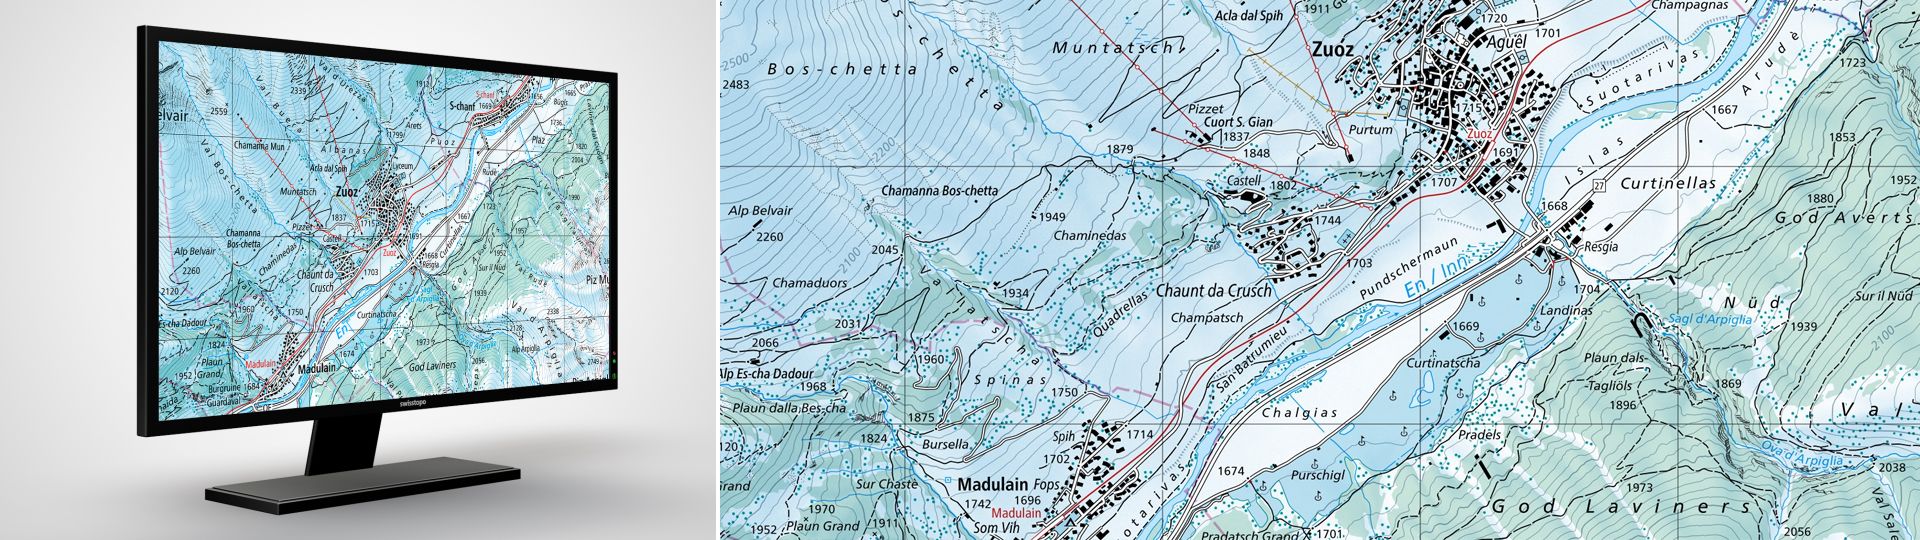 Swiss Map Raster Inverno 50: Swiss Map Raster Inverno 50 è la carta nazionale digitale 1:50 000 in rappresentazione invernale in formato raster.